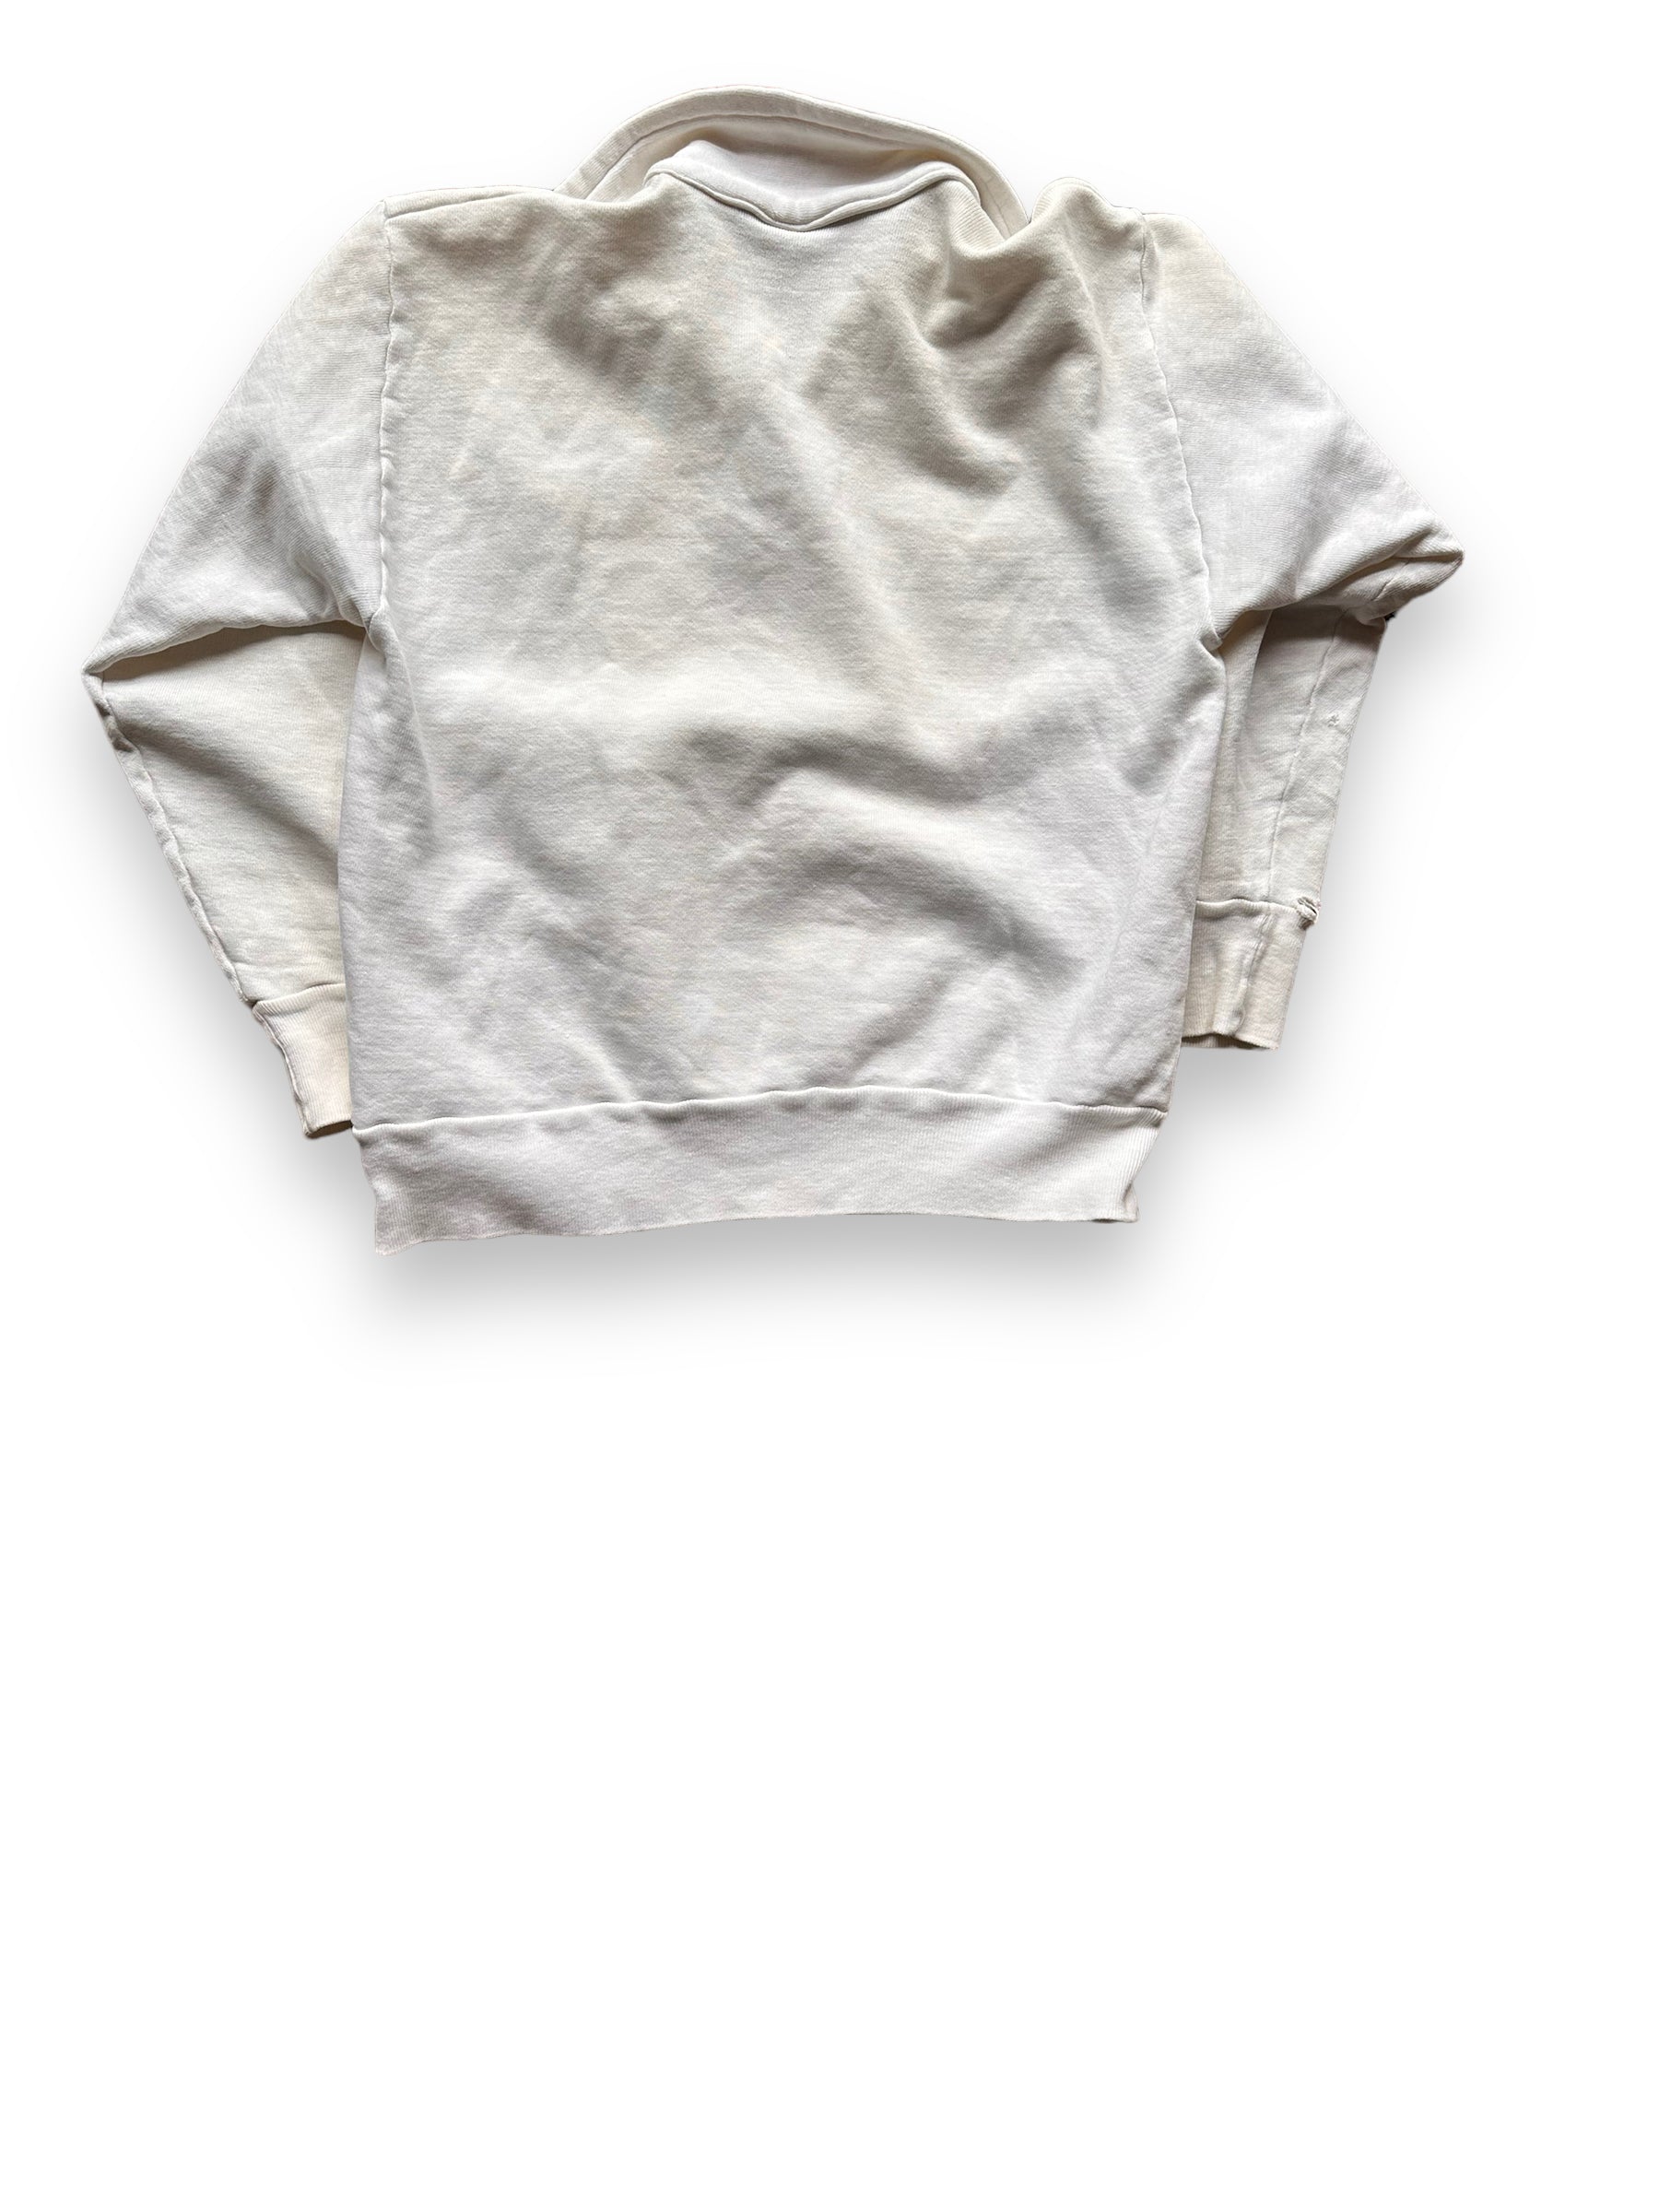 Rear View of Vintage Wilson Sportswear Sweatshirt SZ M | Vintage Sweatshirt Seattle | Barn Owl Vintage Seattle